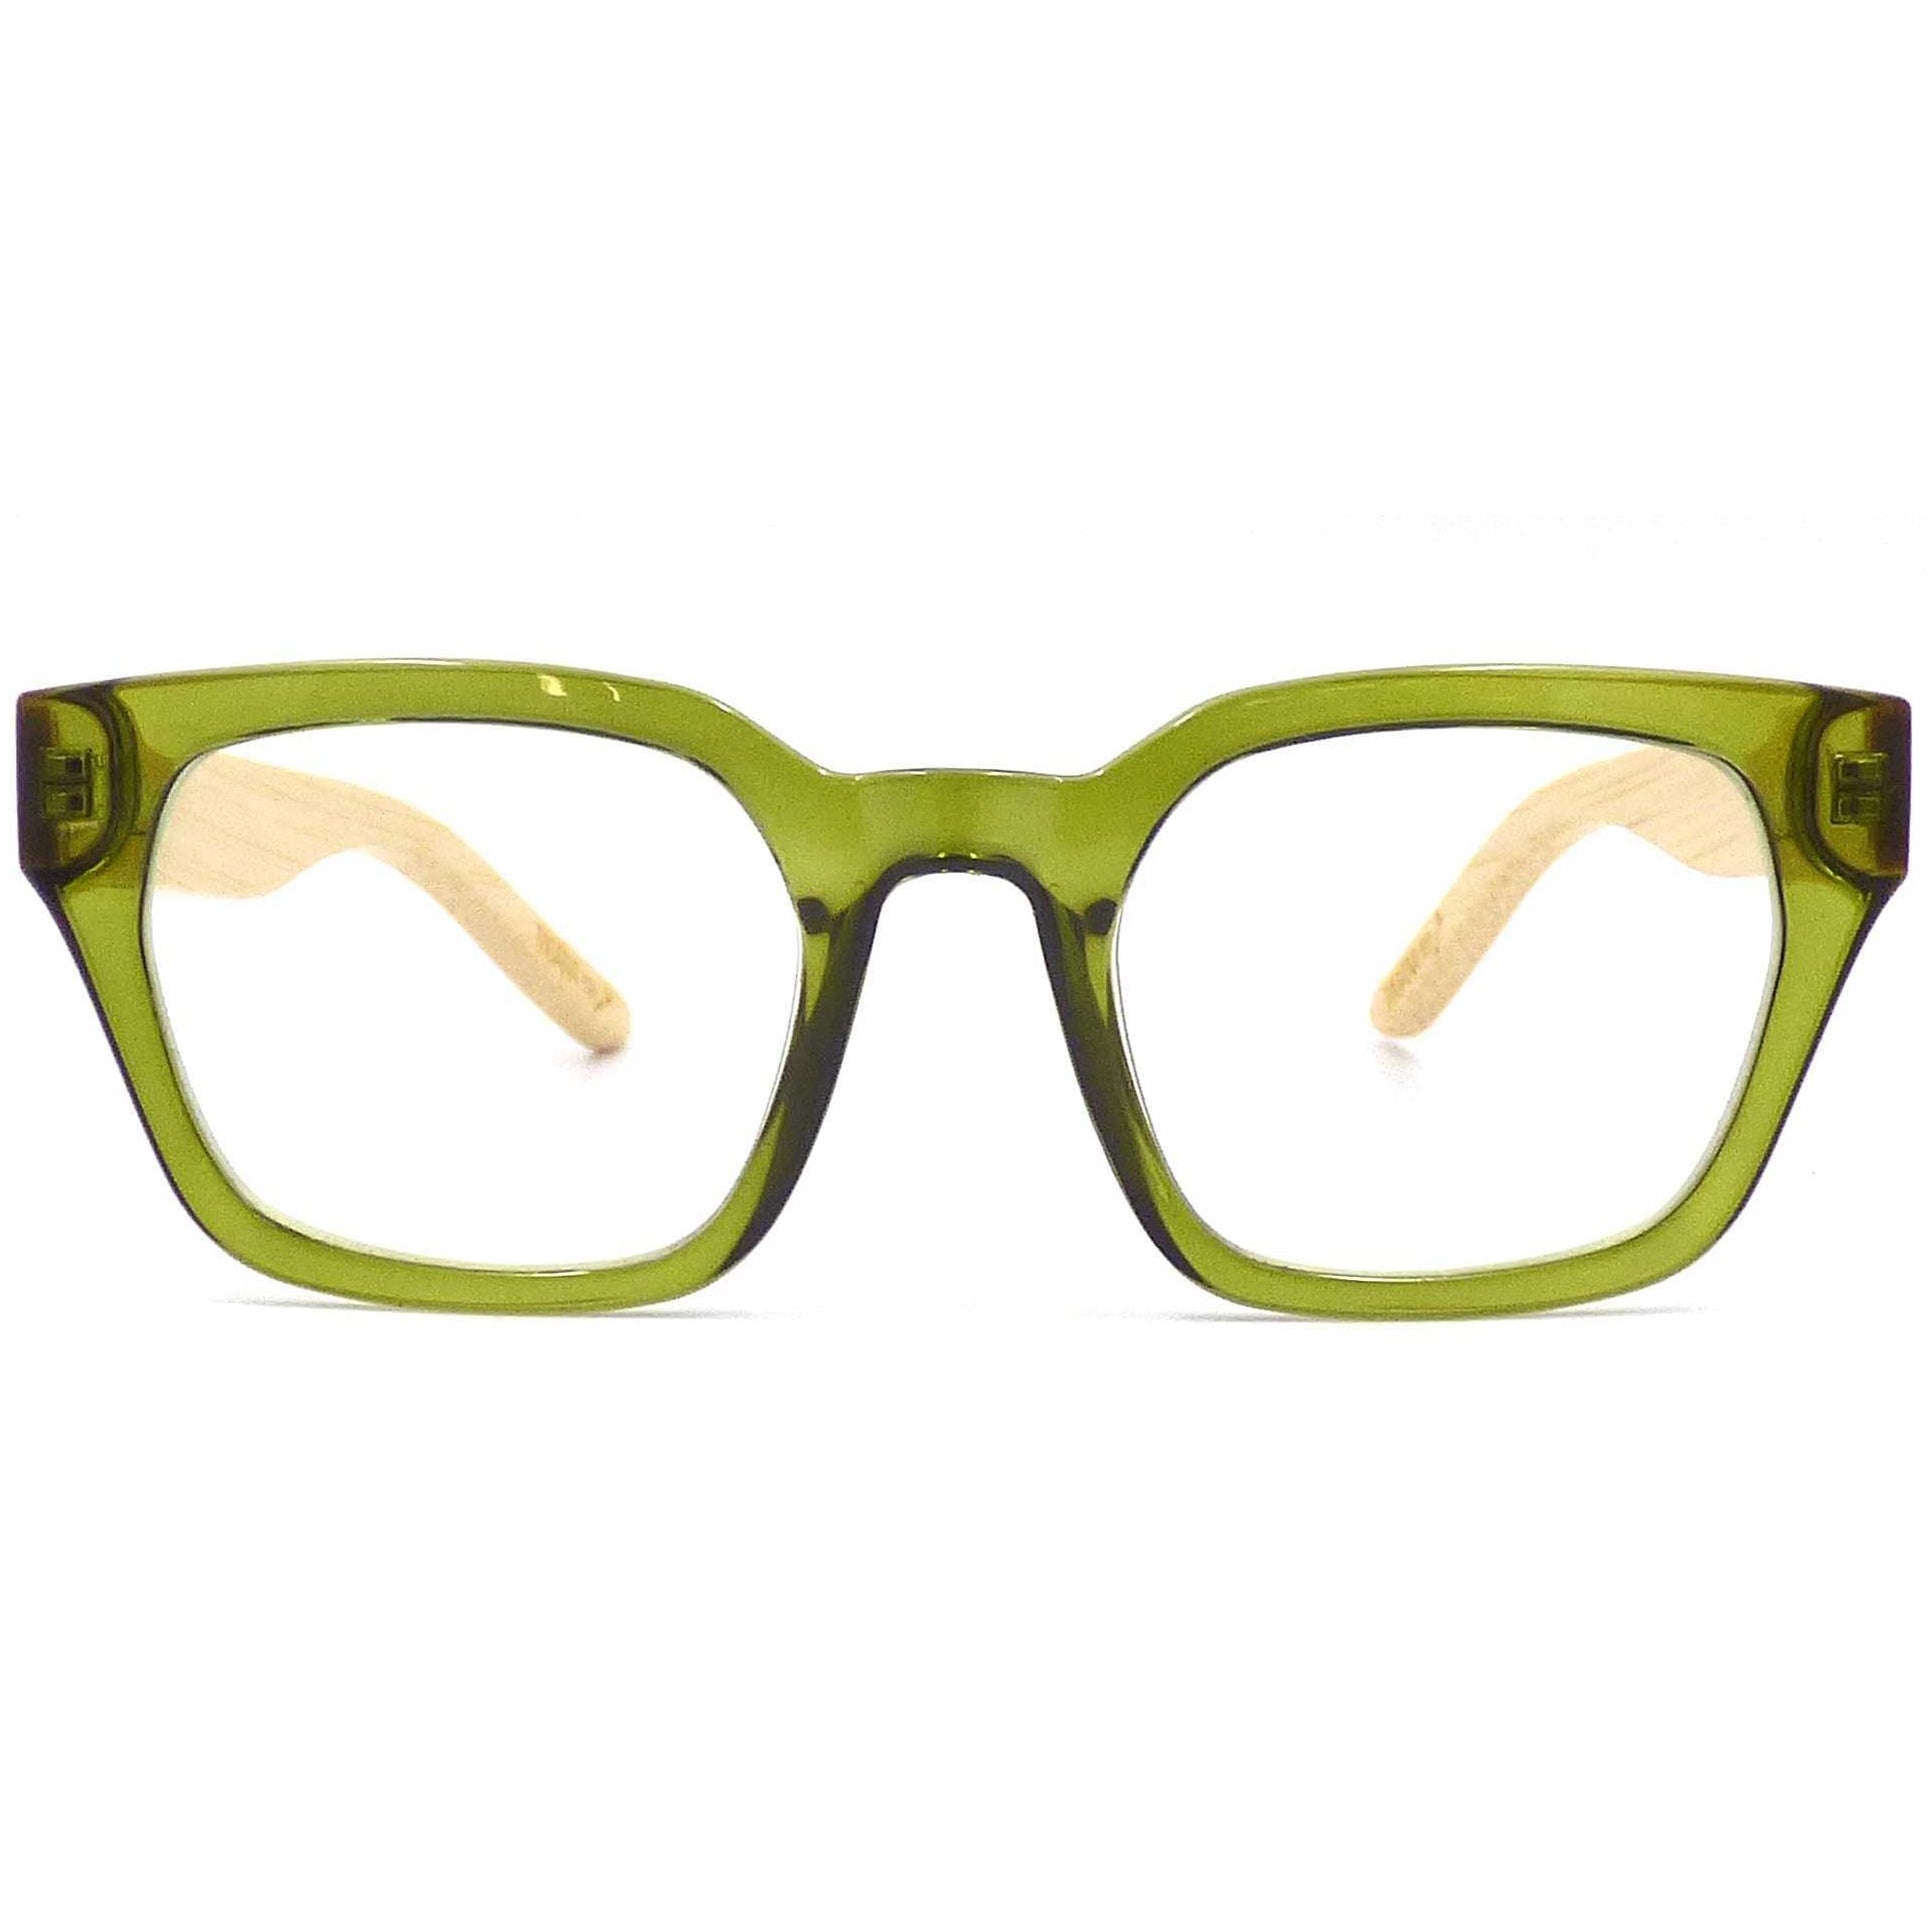 Moana Road Reading Glasses - Green +2.5